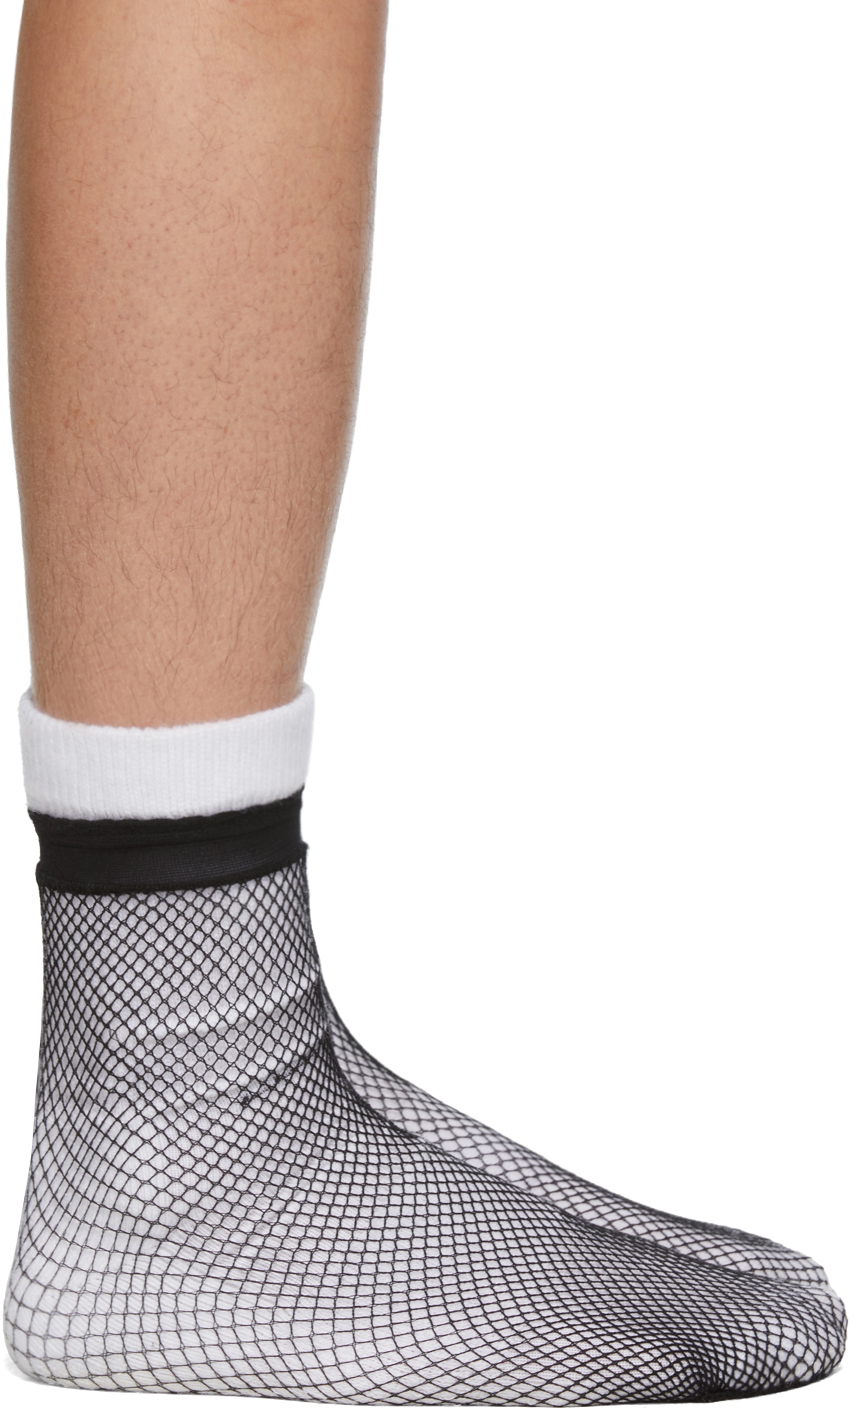 Random Identities White Black Fishnet Socks 191172M220306